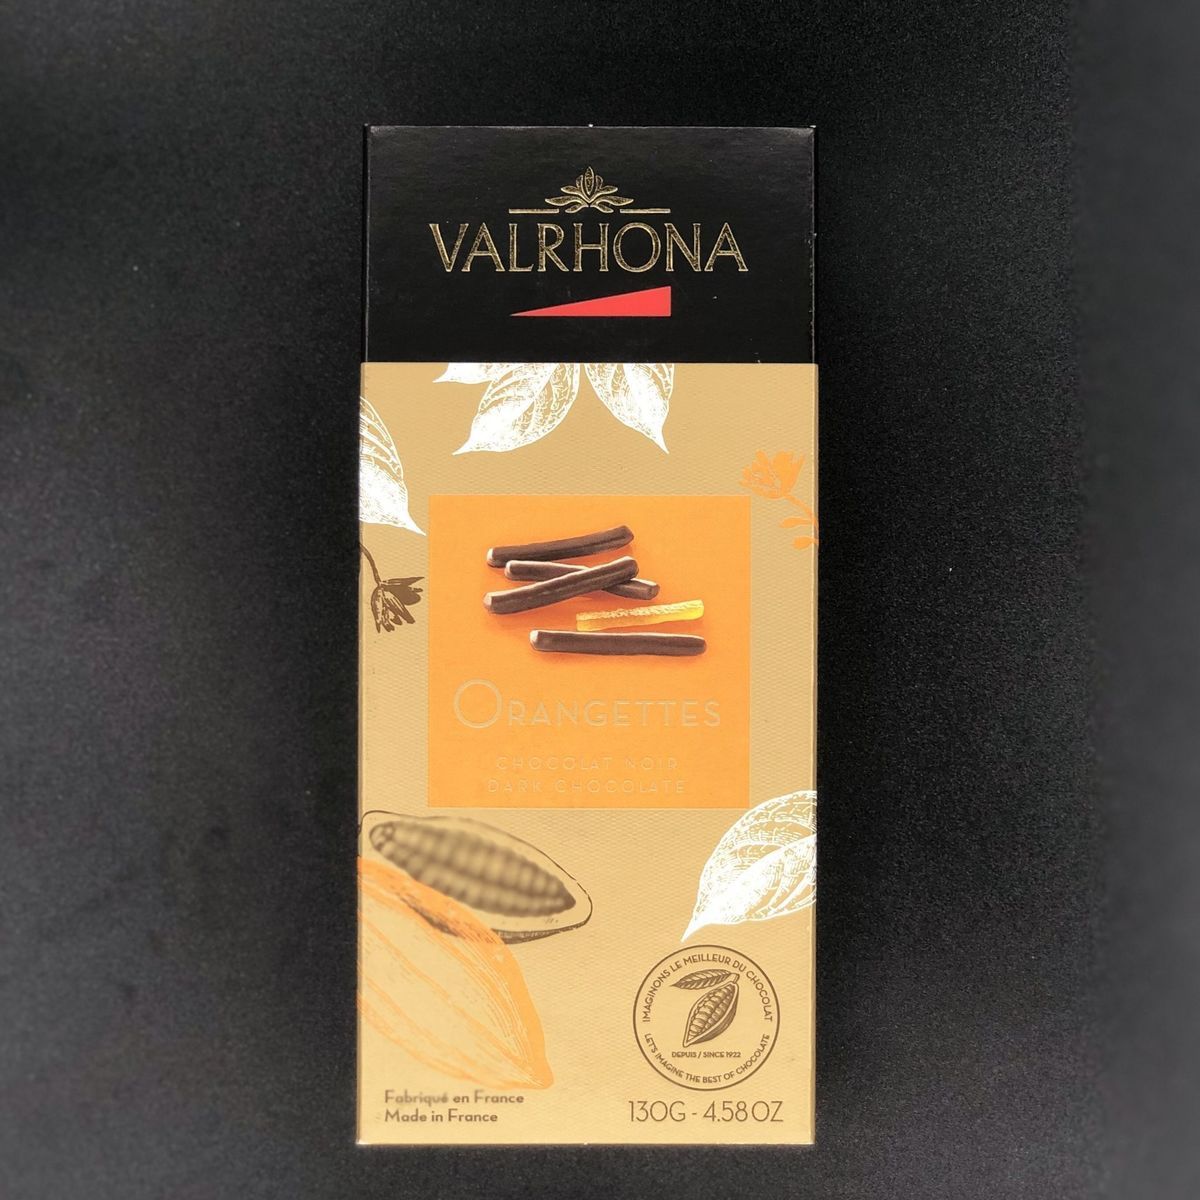 Шоколадные конфеты Valrhona Orangettes апельсиновые цукаты в горьком шоколаде